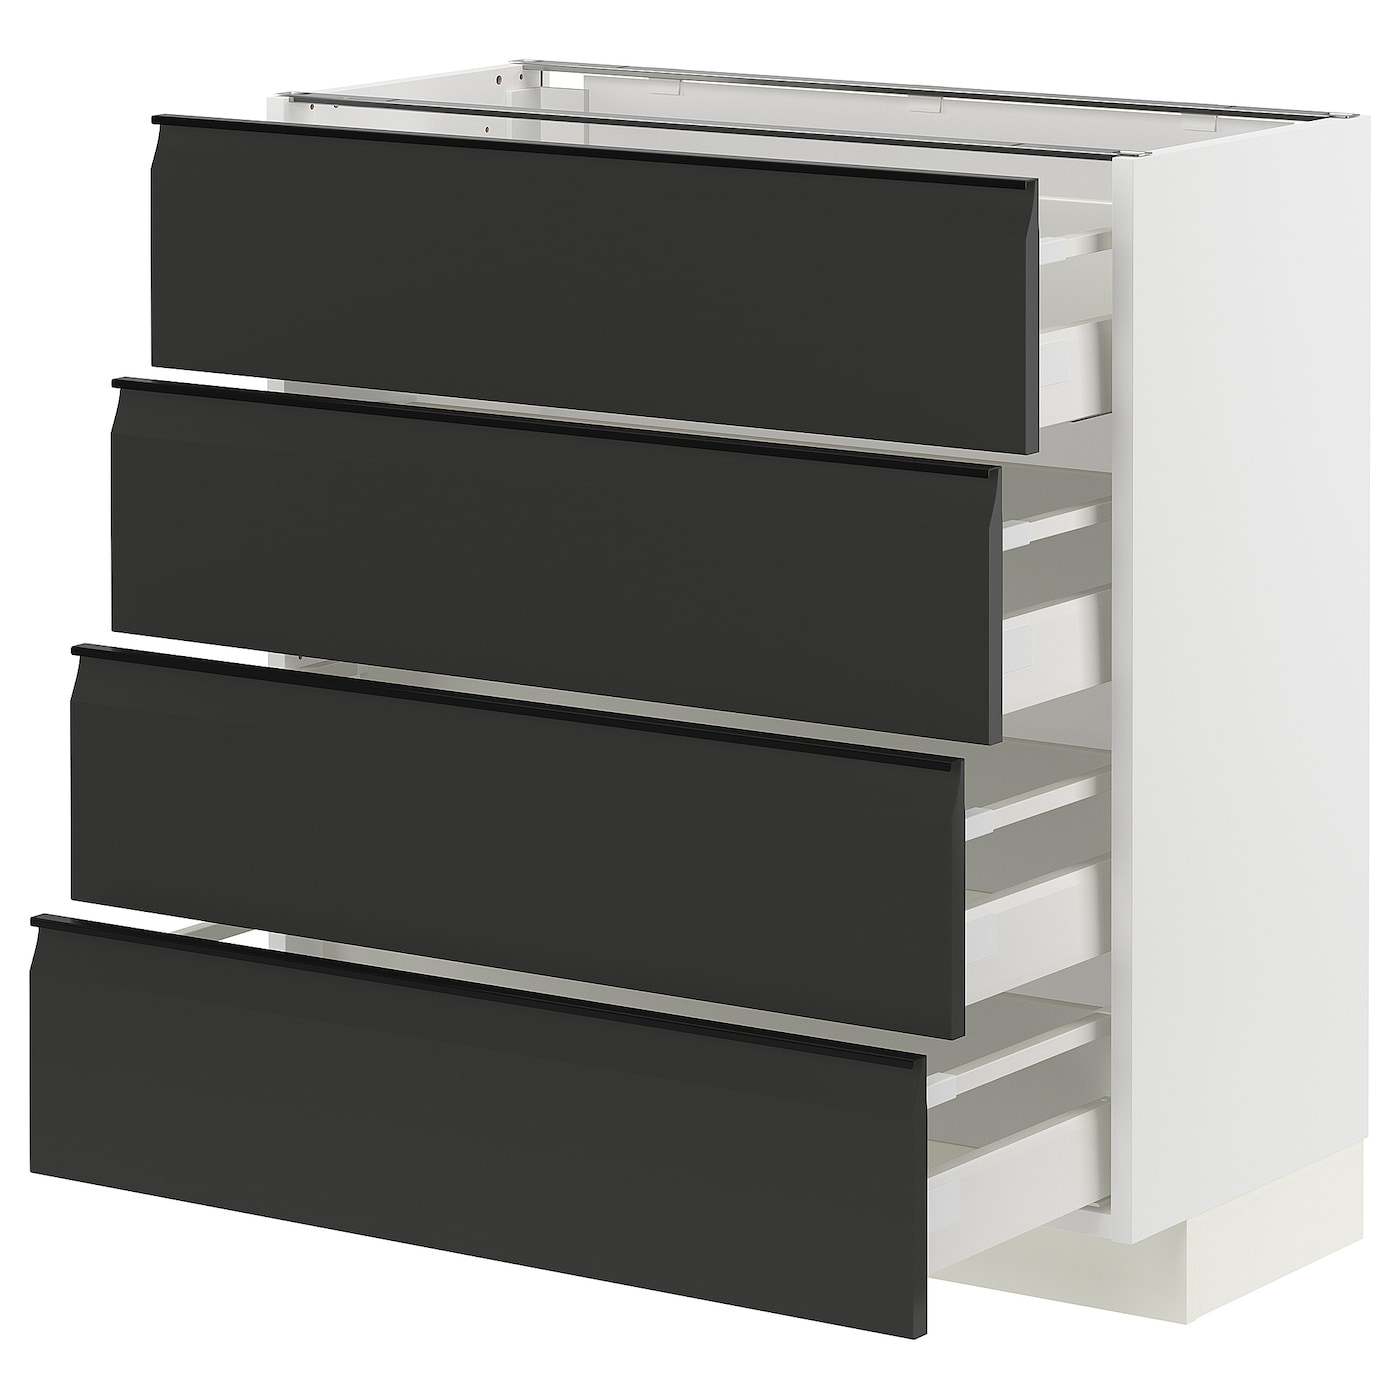 Напольный кухонный шкаф  - IKEA METOD MAXIMERA, 88x39,2x80см, белый/черный, МЕТОД МАКСИМЕРА ИКЕА